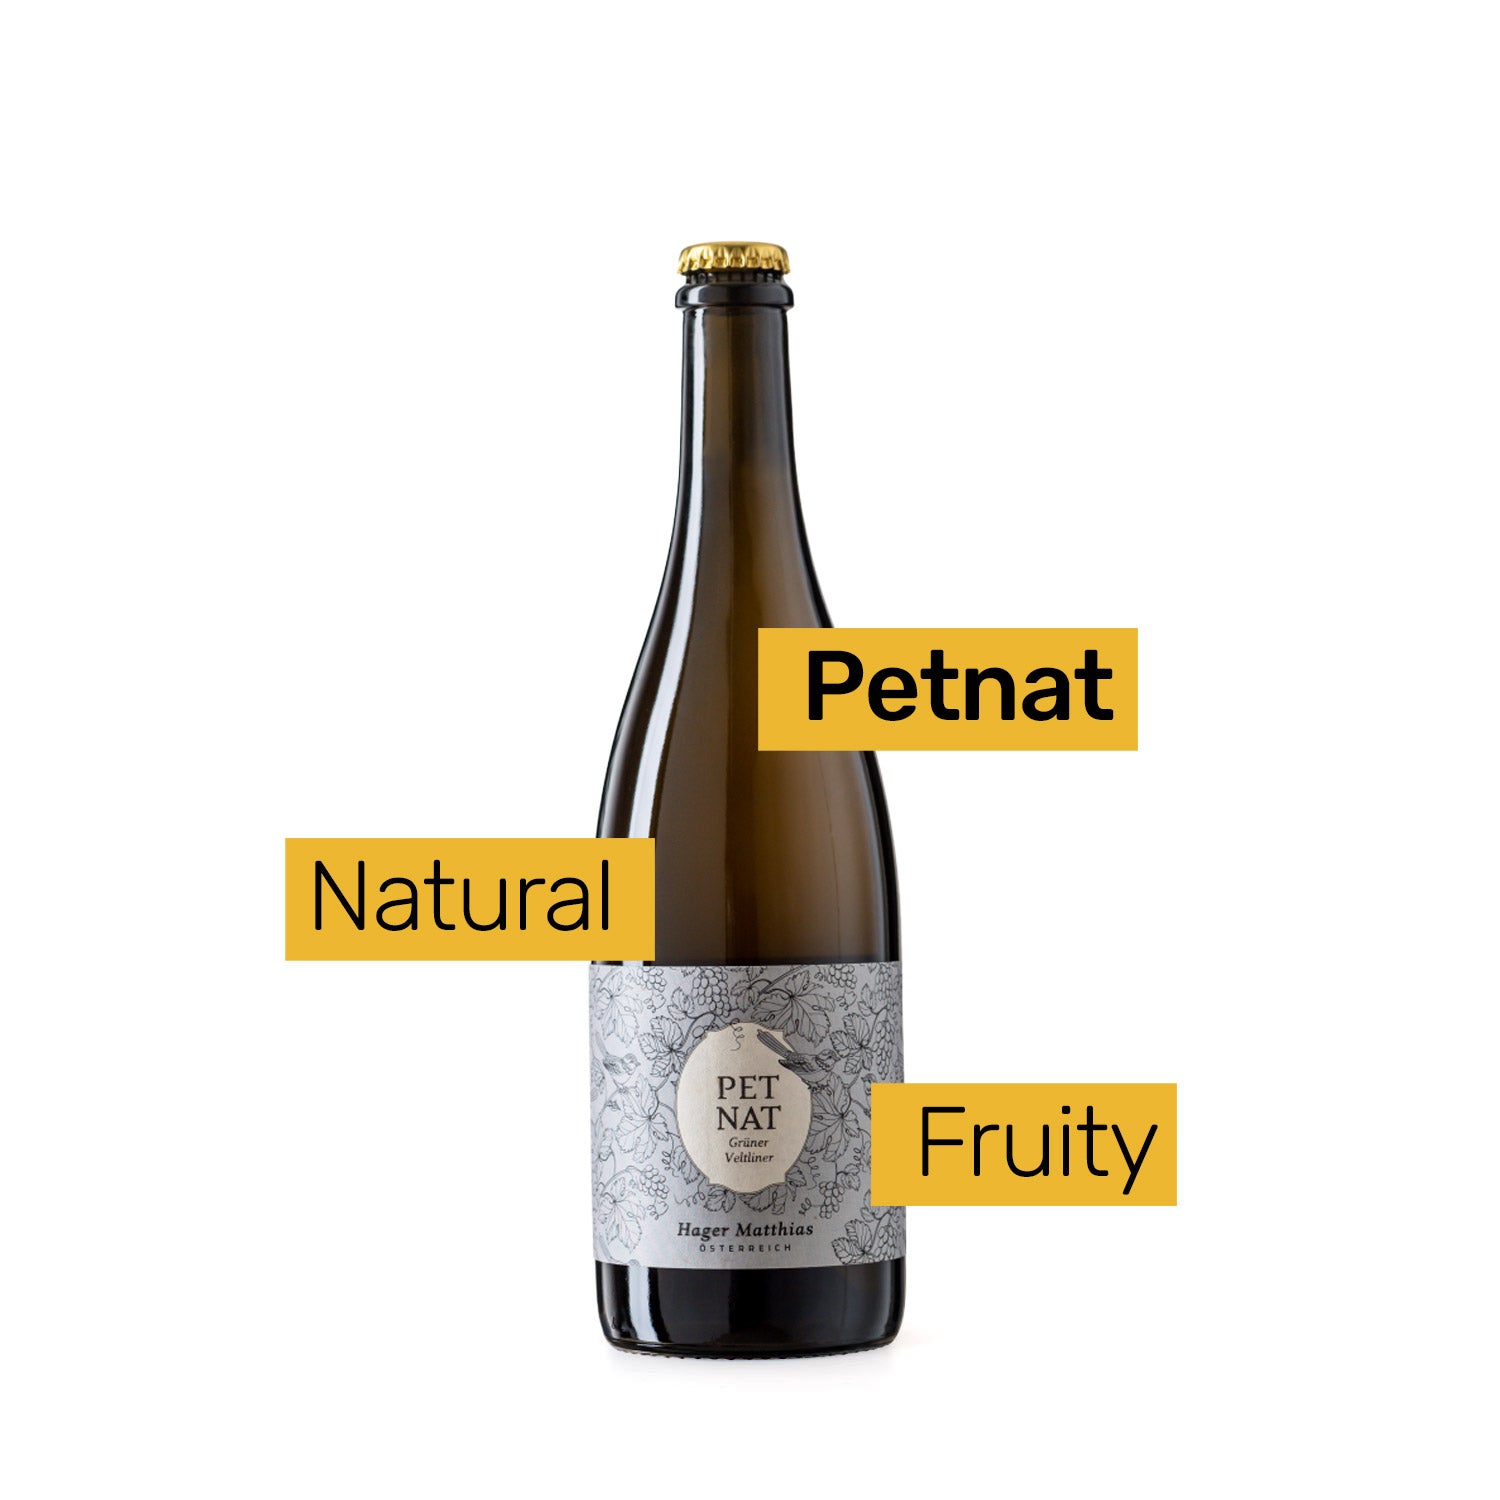 Petnat Grüner Veltliner, Matthias Hager, Naturally Sparkling White Wine